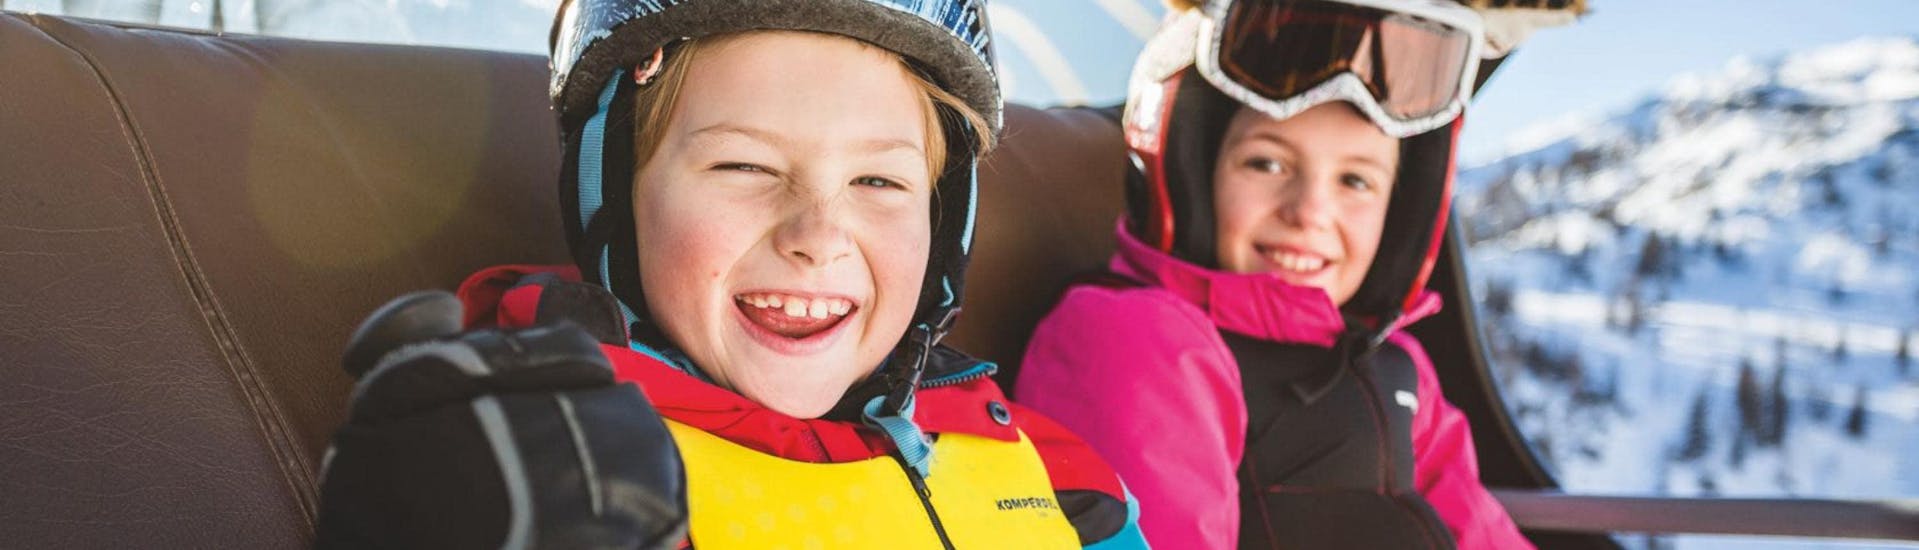 Snowboardkurs für Kinder (6-16 J.) für Anfänger - Halbtags.